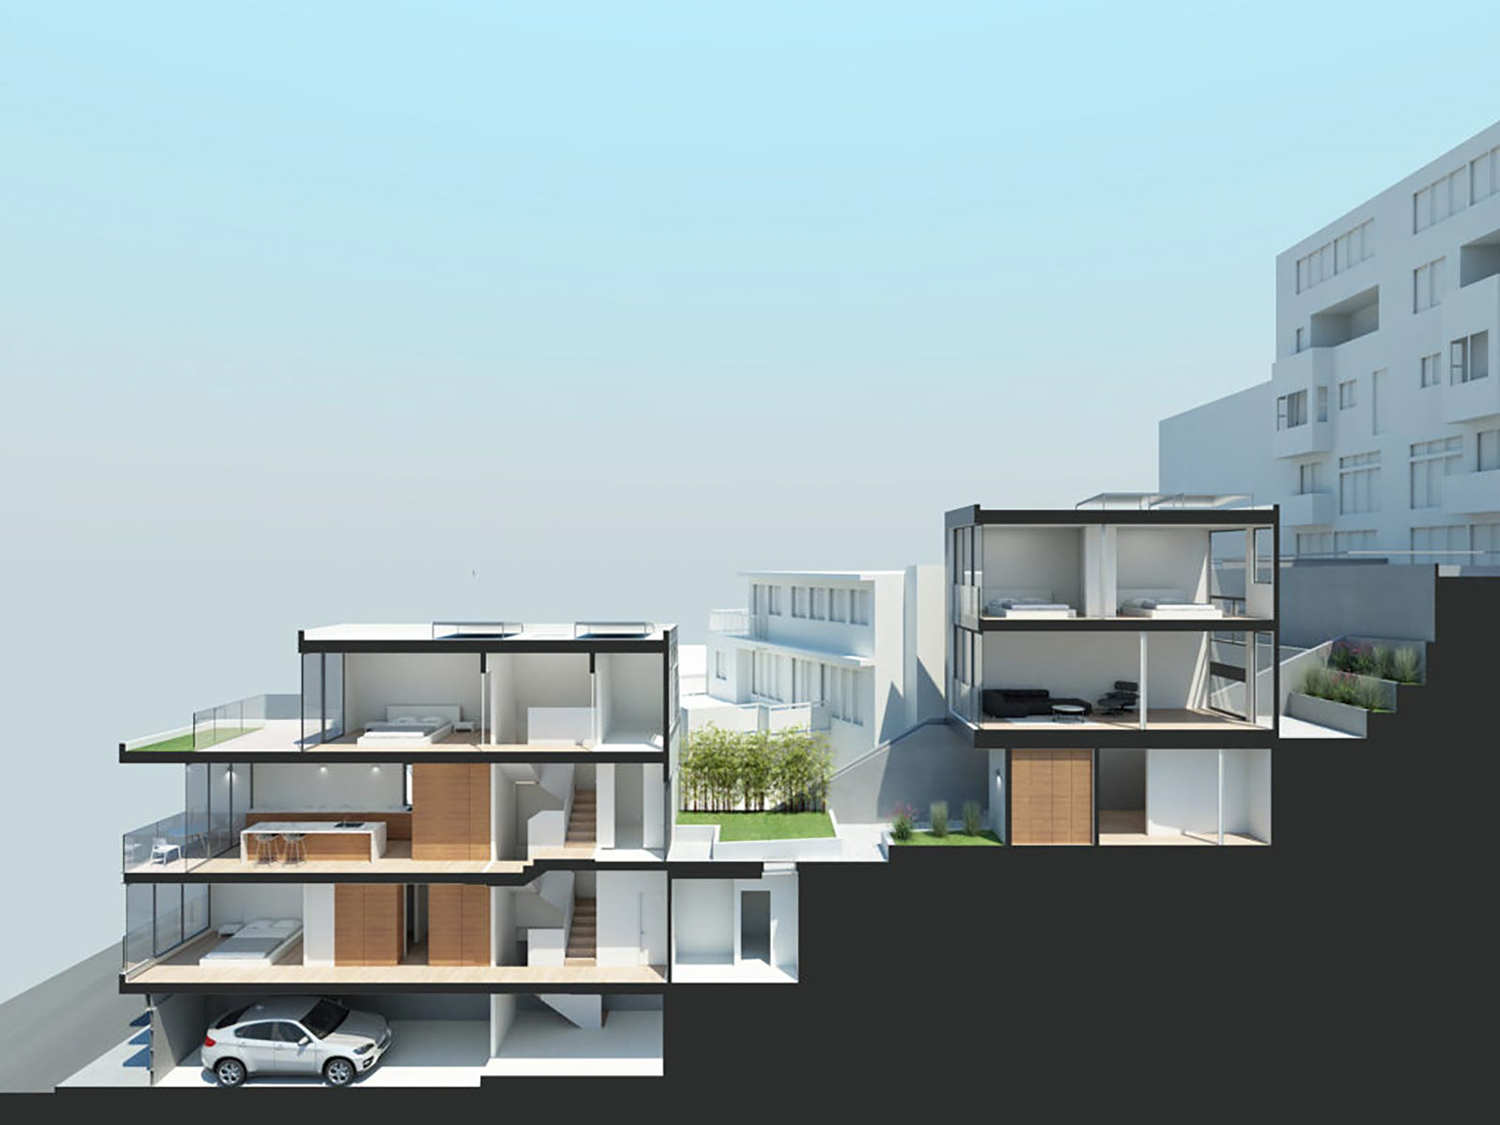 150-162 Grand View Avenue cross-section, design by Zack de Vito Architect